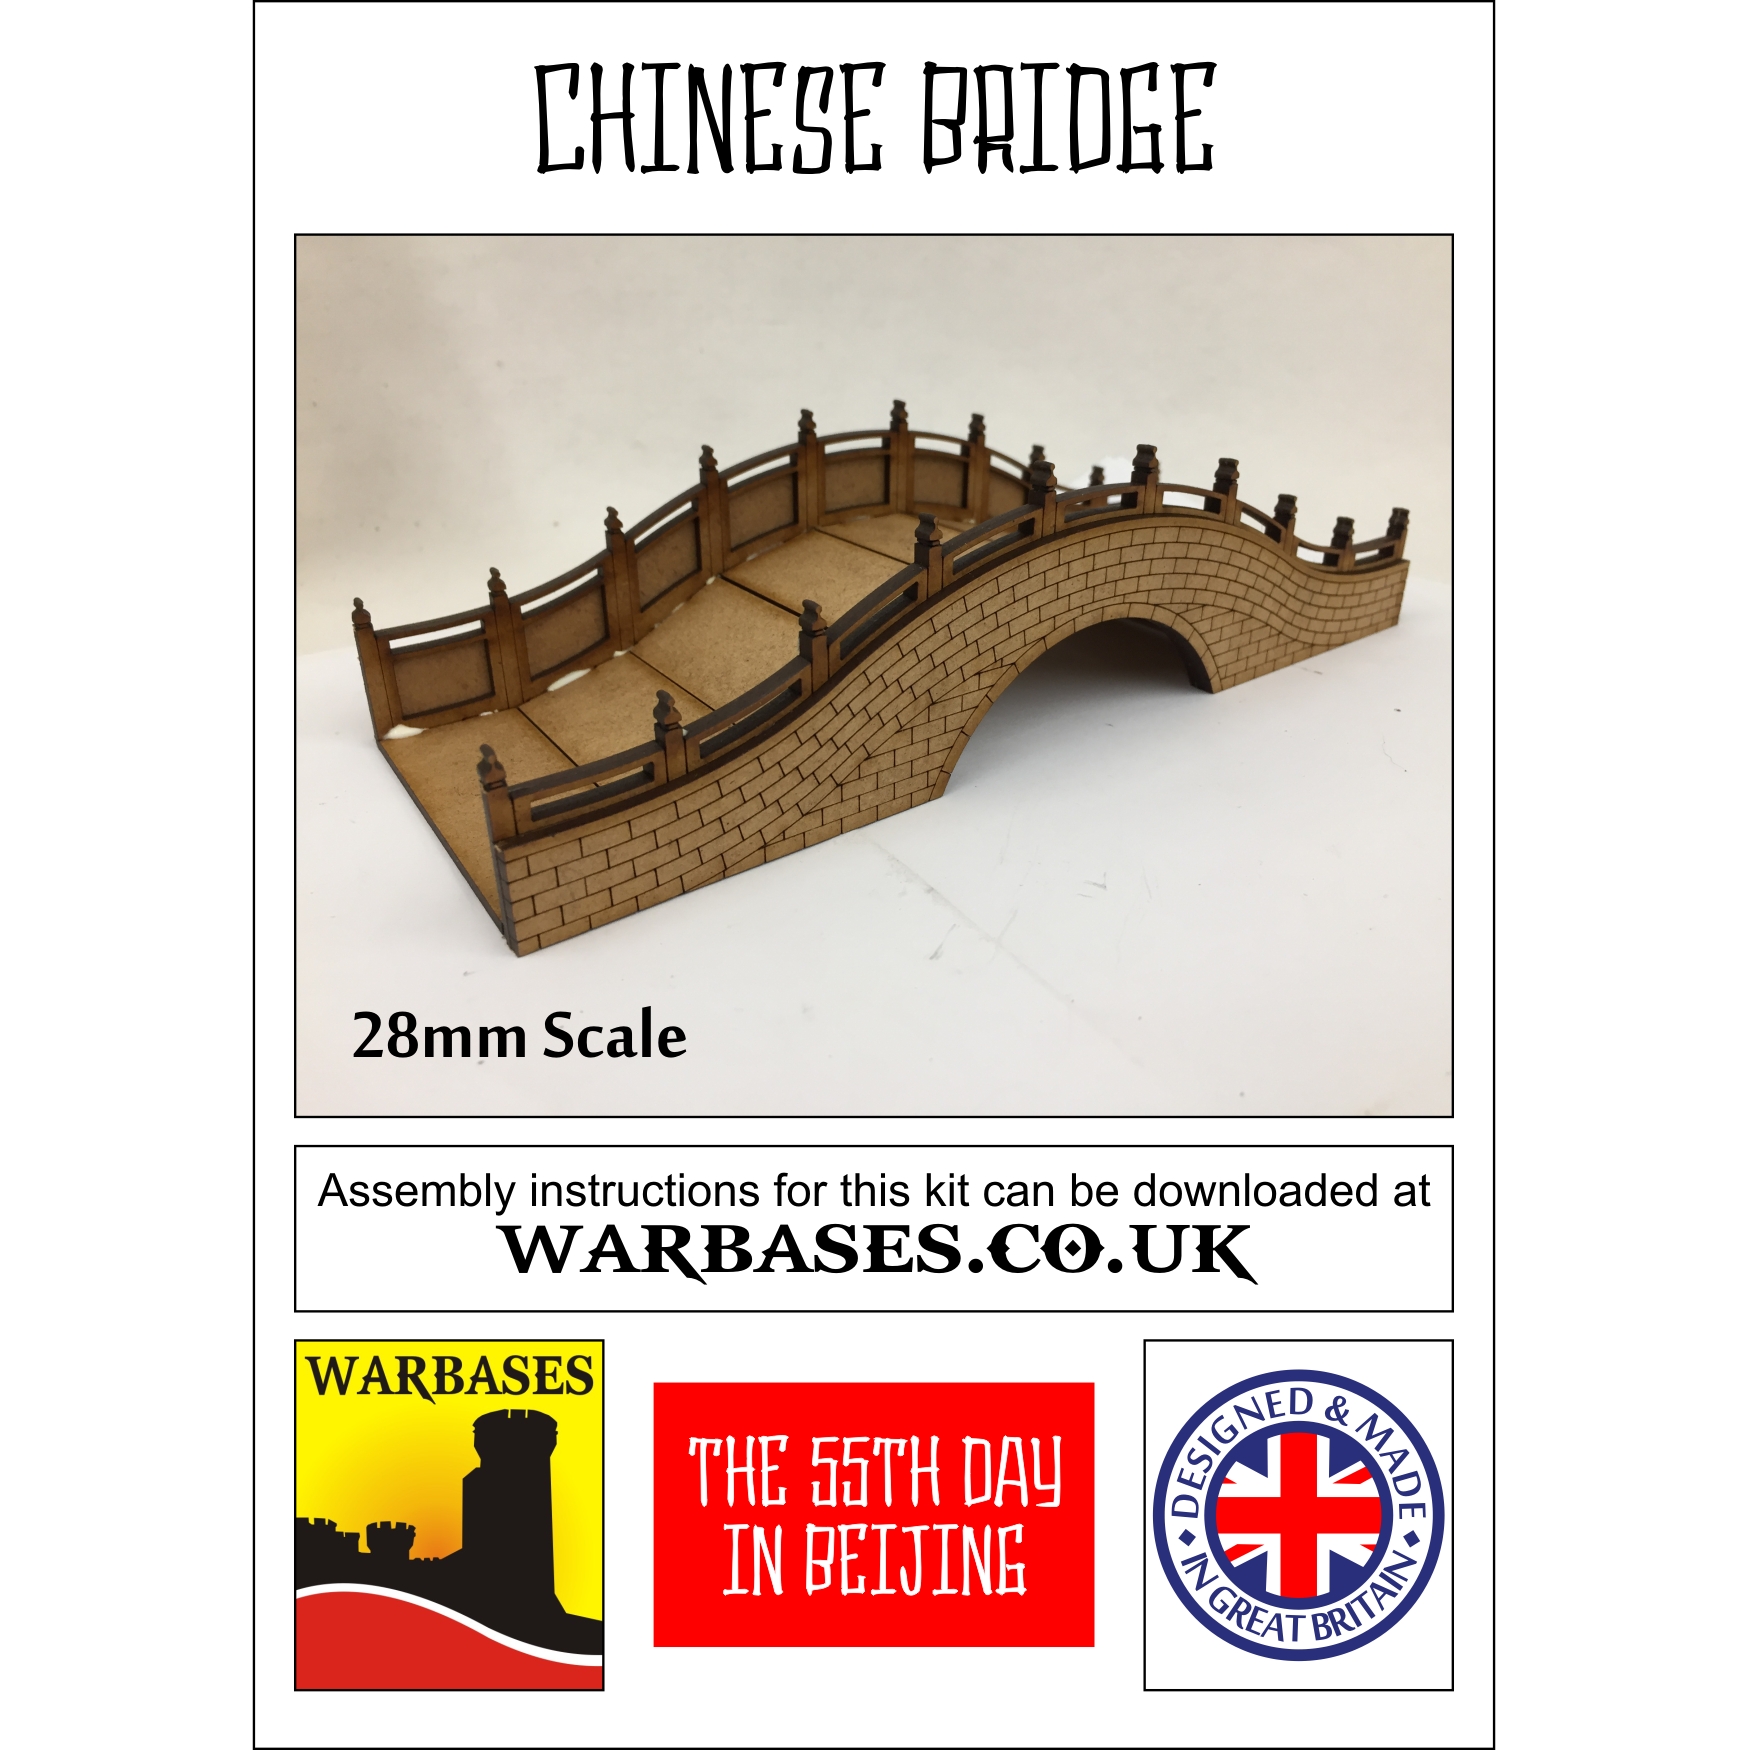 CHA1 - Chinese Bridge